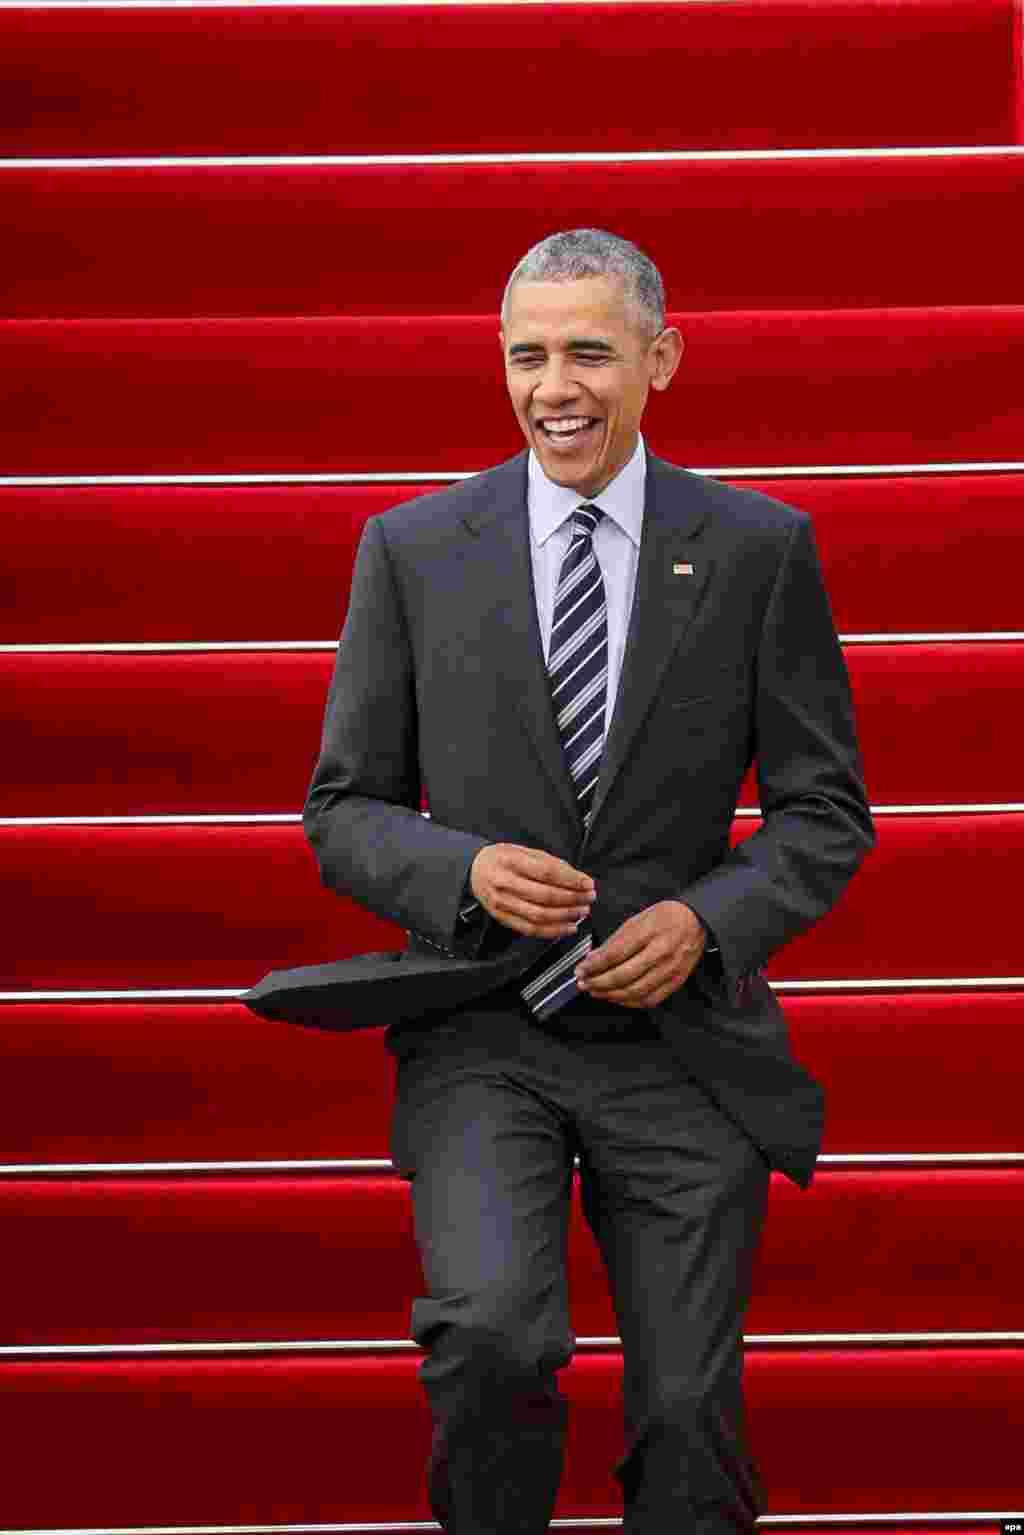 Tổng thống Obama bước xuống từ chuyên cơ&nbsp;Air Force One tại sân bay Tân Sơn Nhất với hình ảnh một vị tổng thống lịch lãm và năng động.